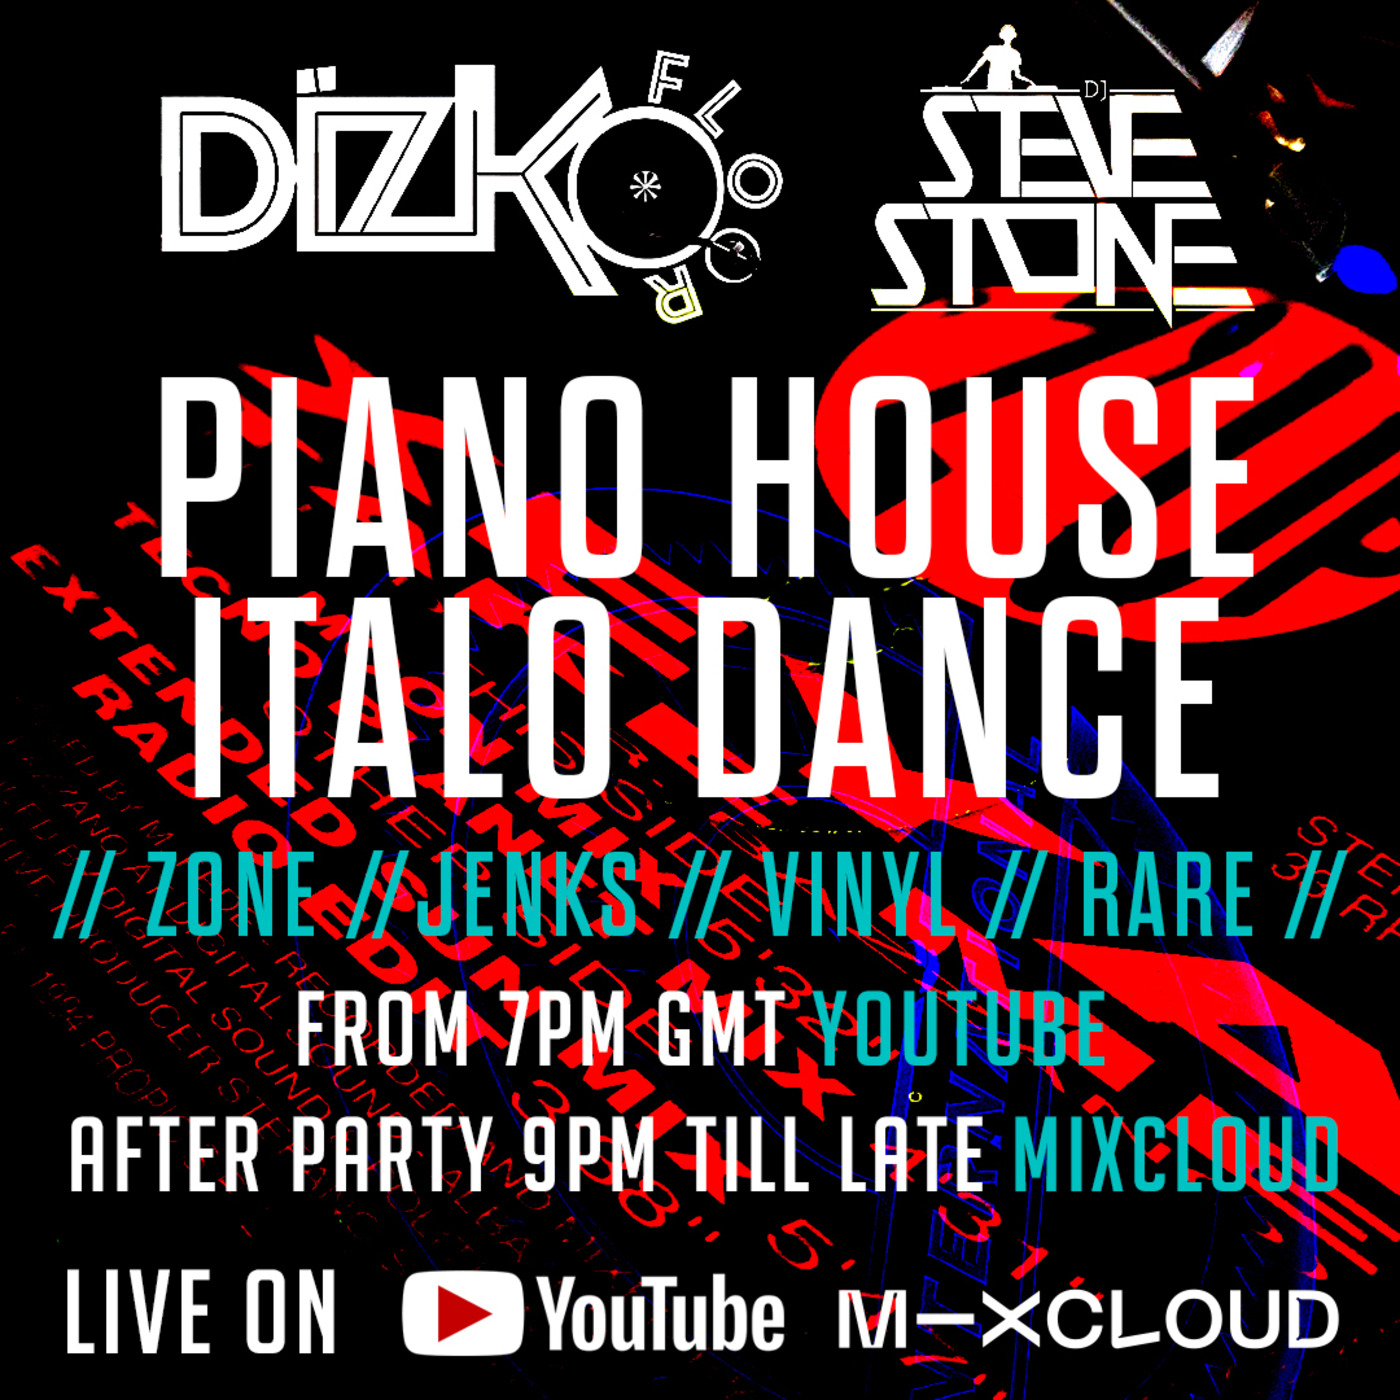 DJ STEVE STONE/DIZKO FLOOR LIVE | Italo Dance // Zone // Jenks // Vinyl Set